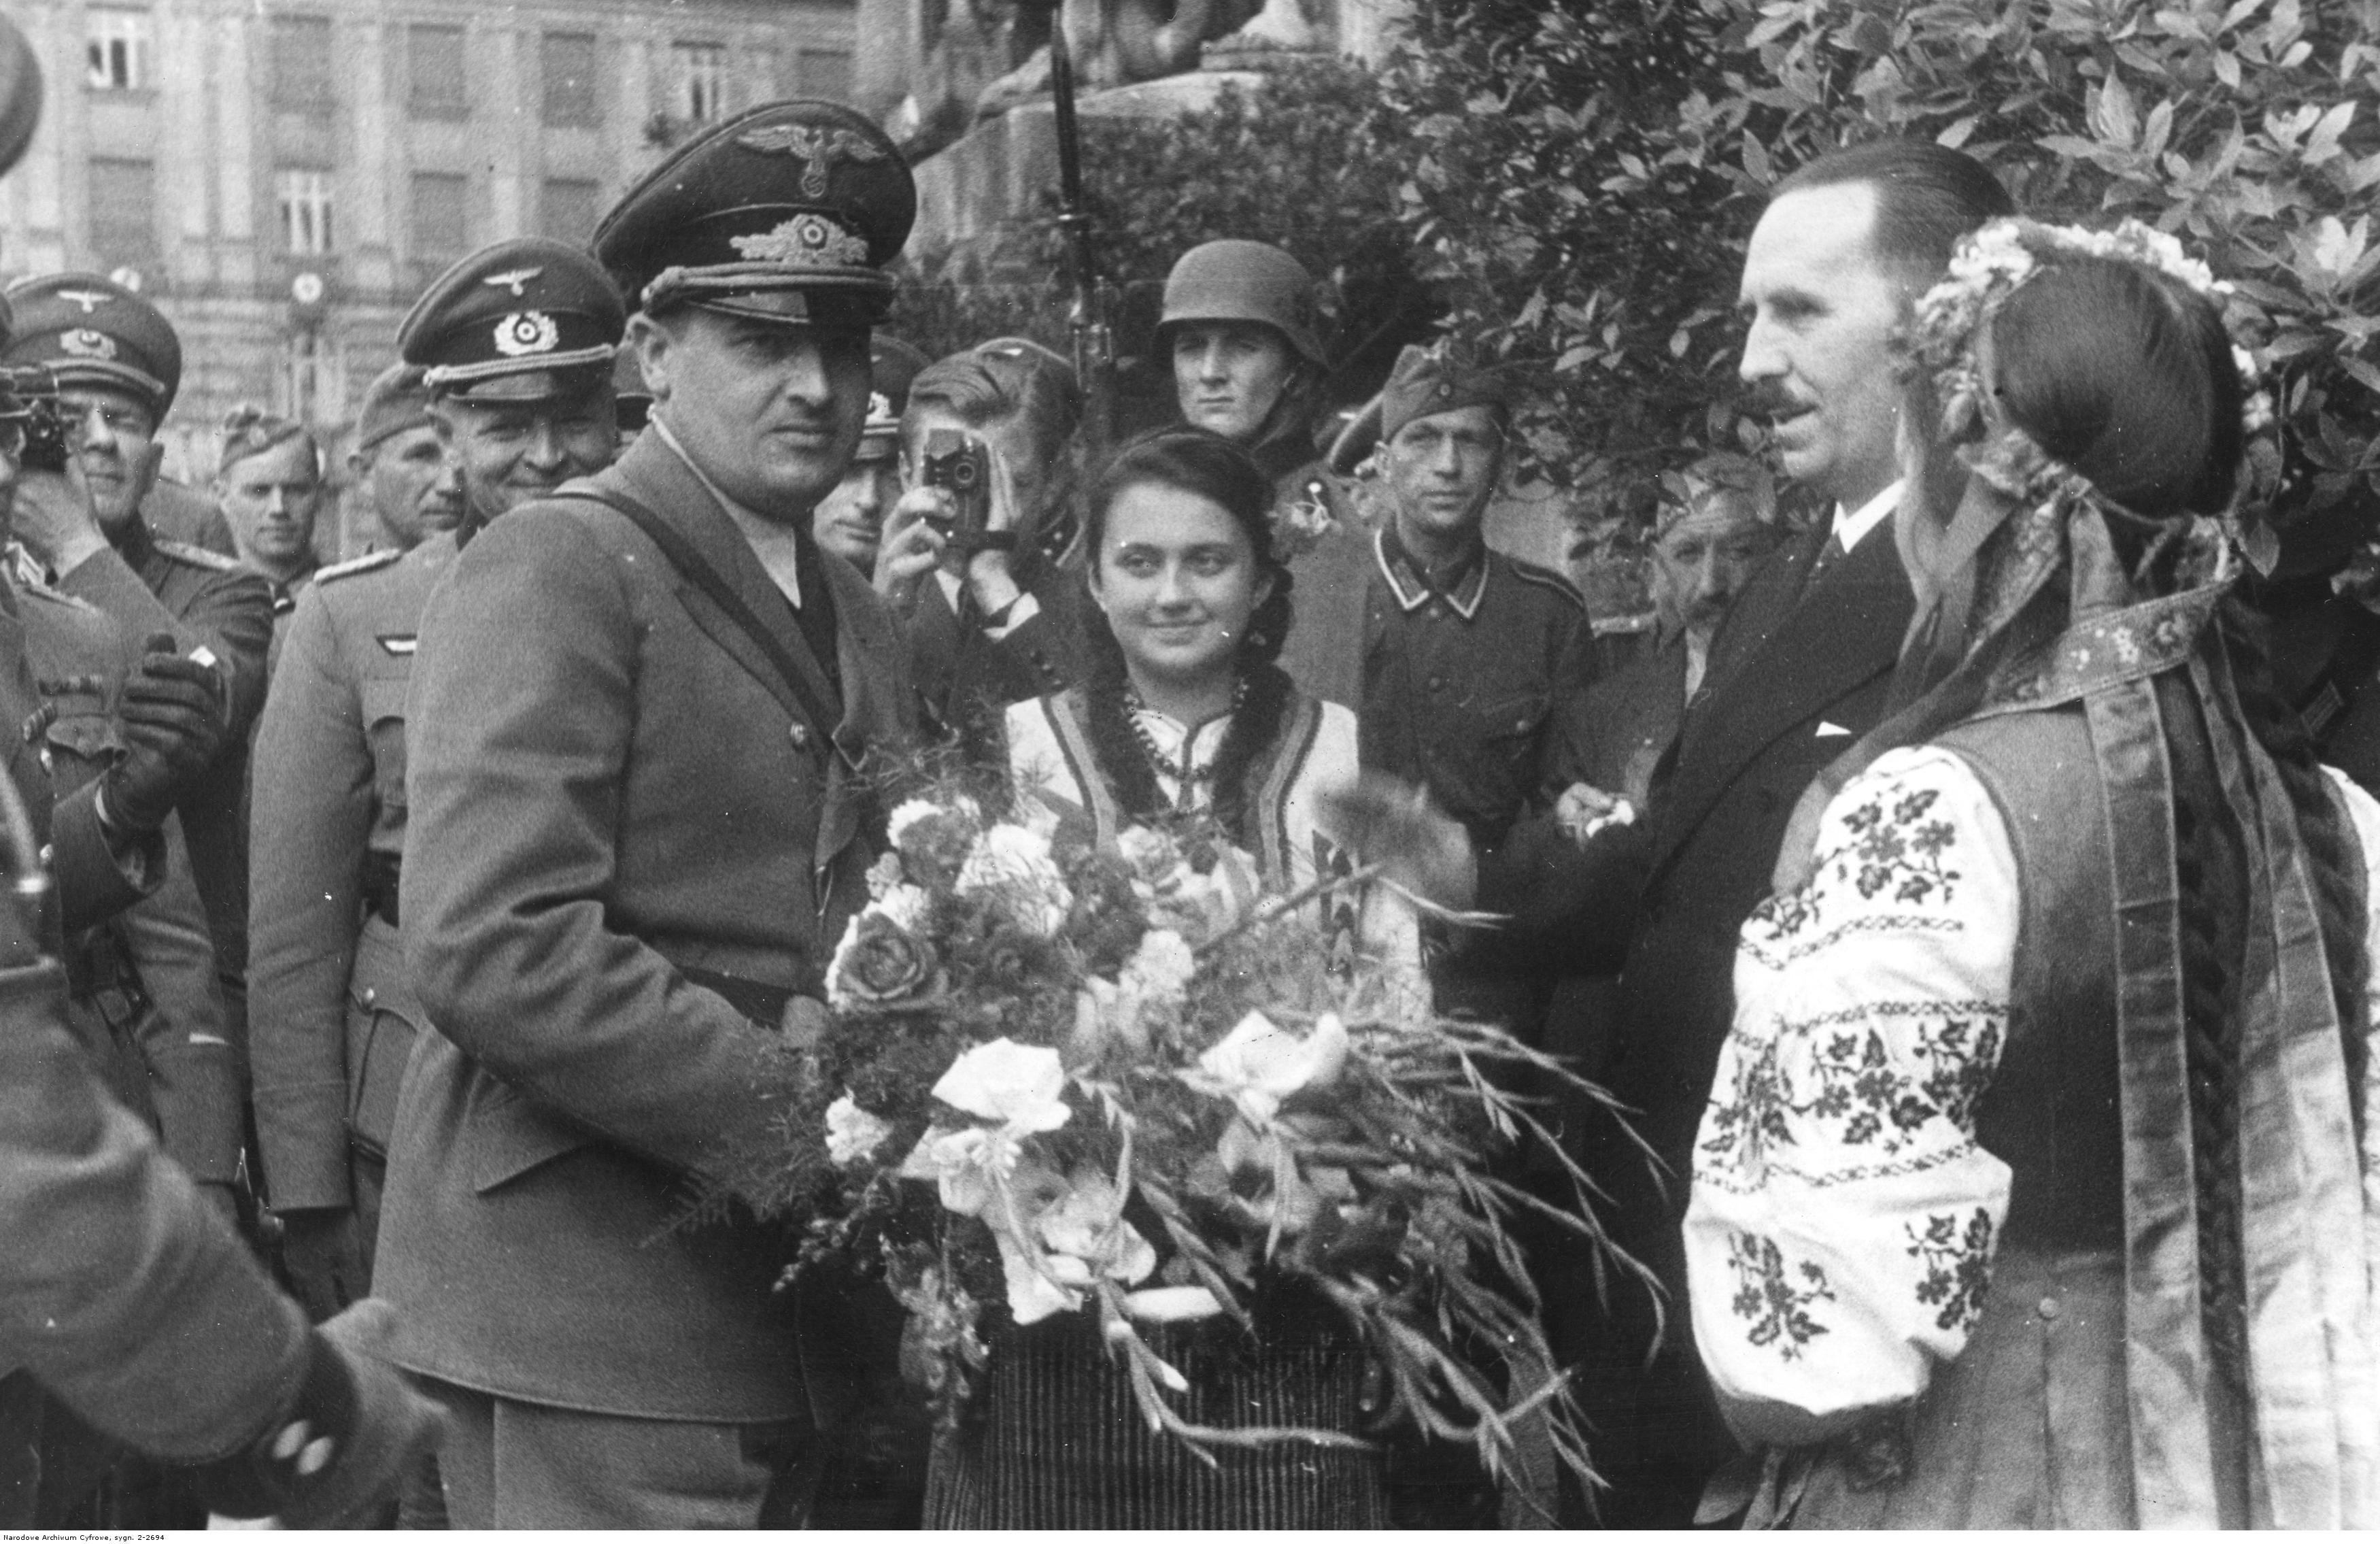 Украинцы в вов. Львов 1941 украинцы встречают немцев. Встреча фашистов на Украине в 1941. Украинцы встречают Гитлера 1941. Парад во Львове 1941.